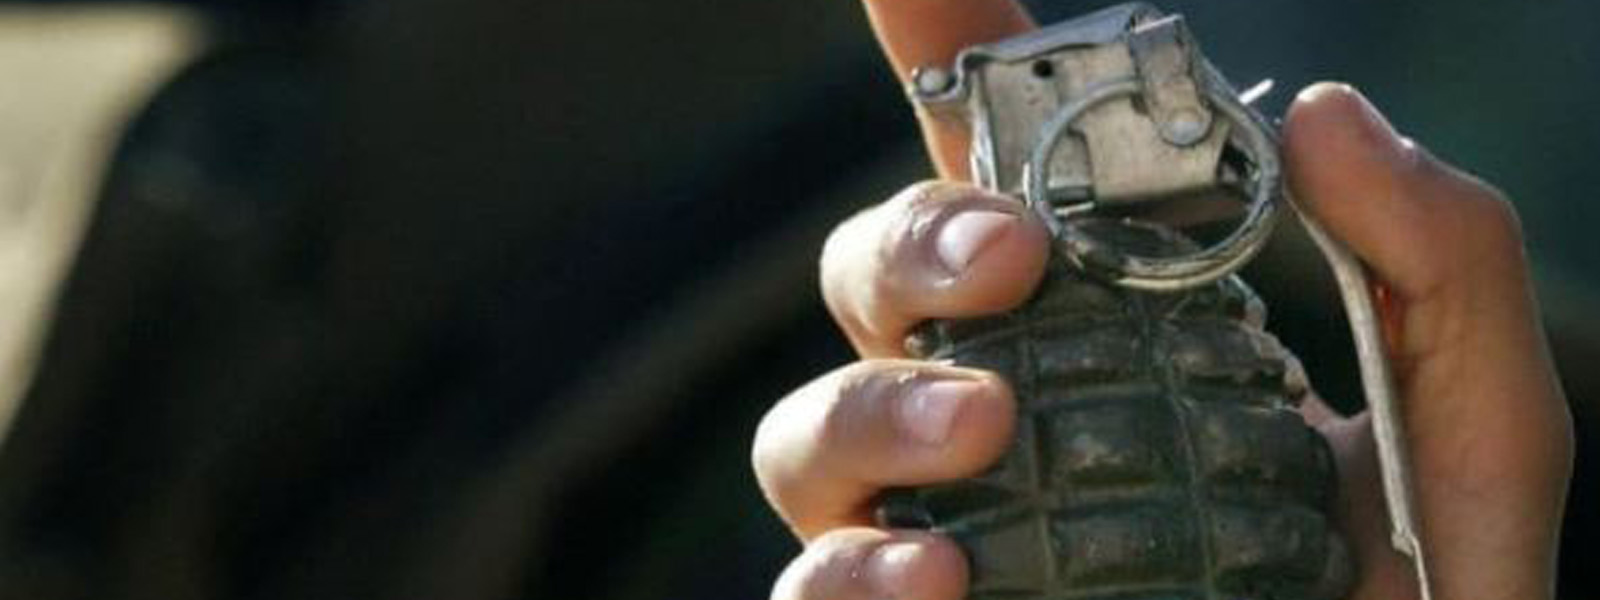 Hand-grenades - centre of Debaraweva arrest